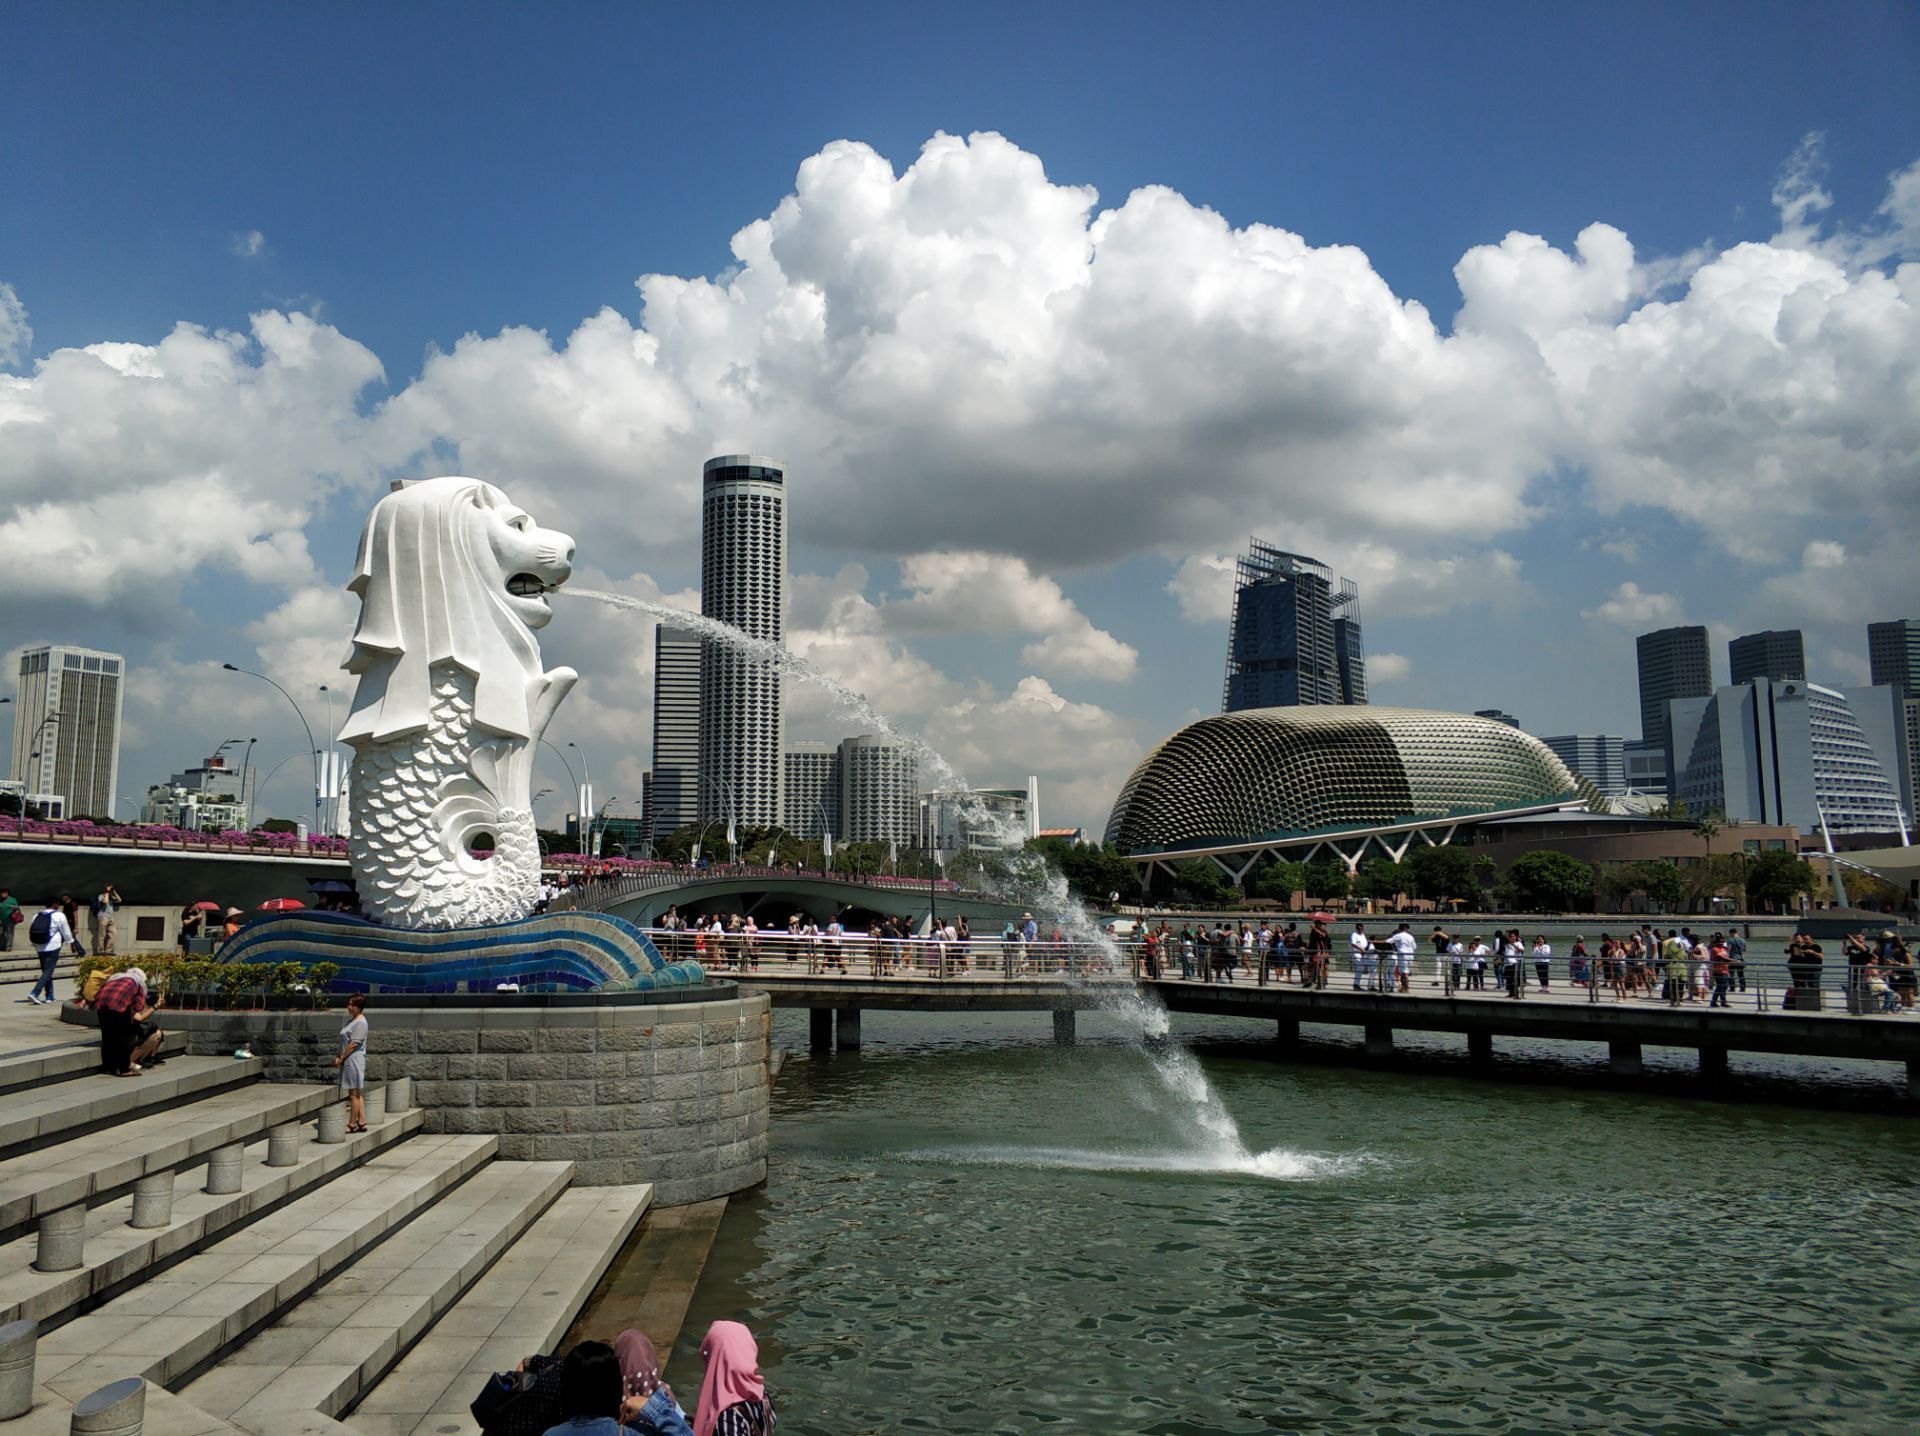 【携程攻略】新加坡鱼尾狮公园景点,鱼尾狮公园位于新加坡河河口，著名的鱼尾狮像就坐落于新加坡河河畔，…